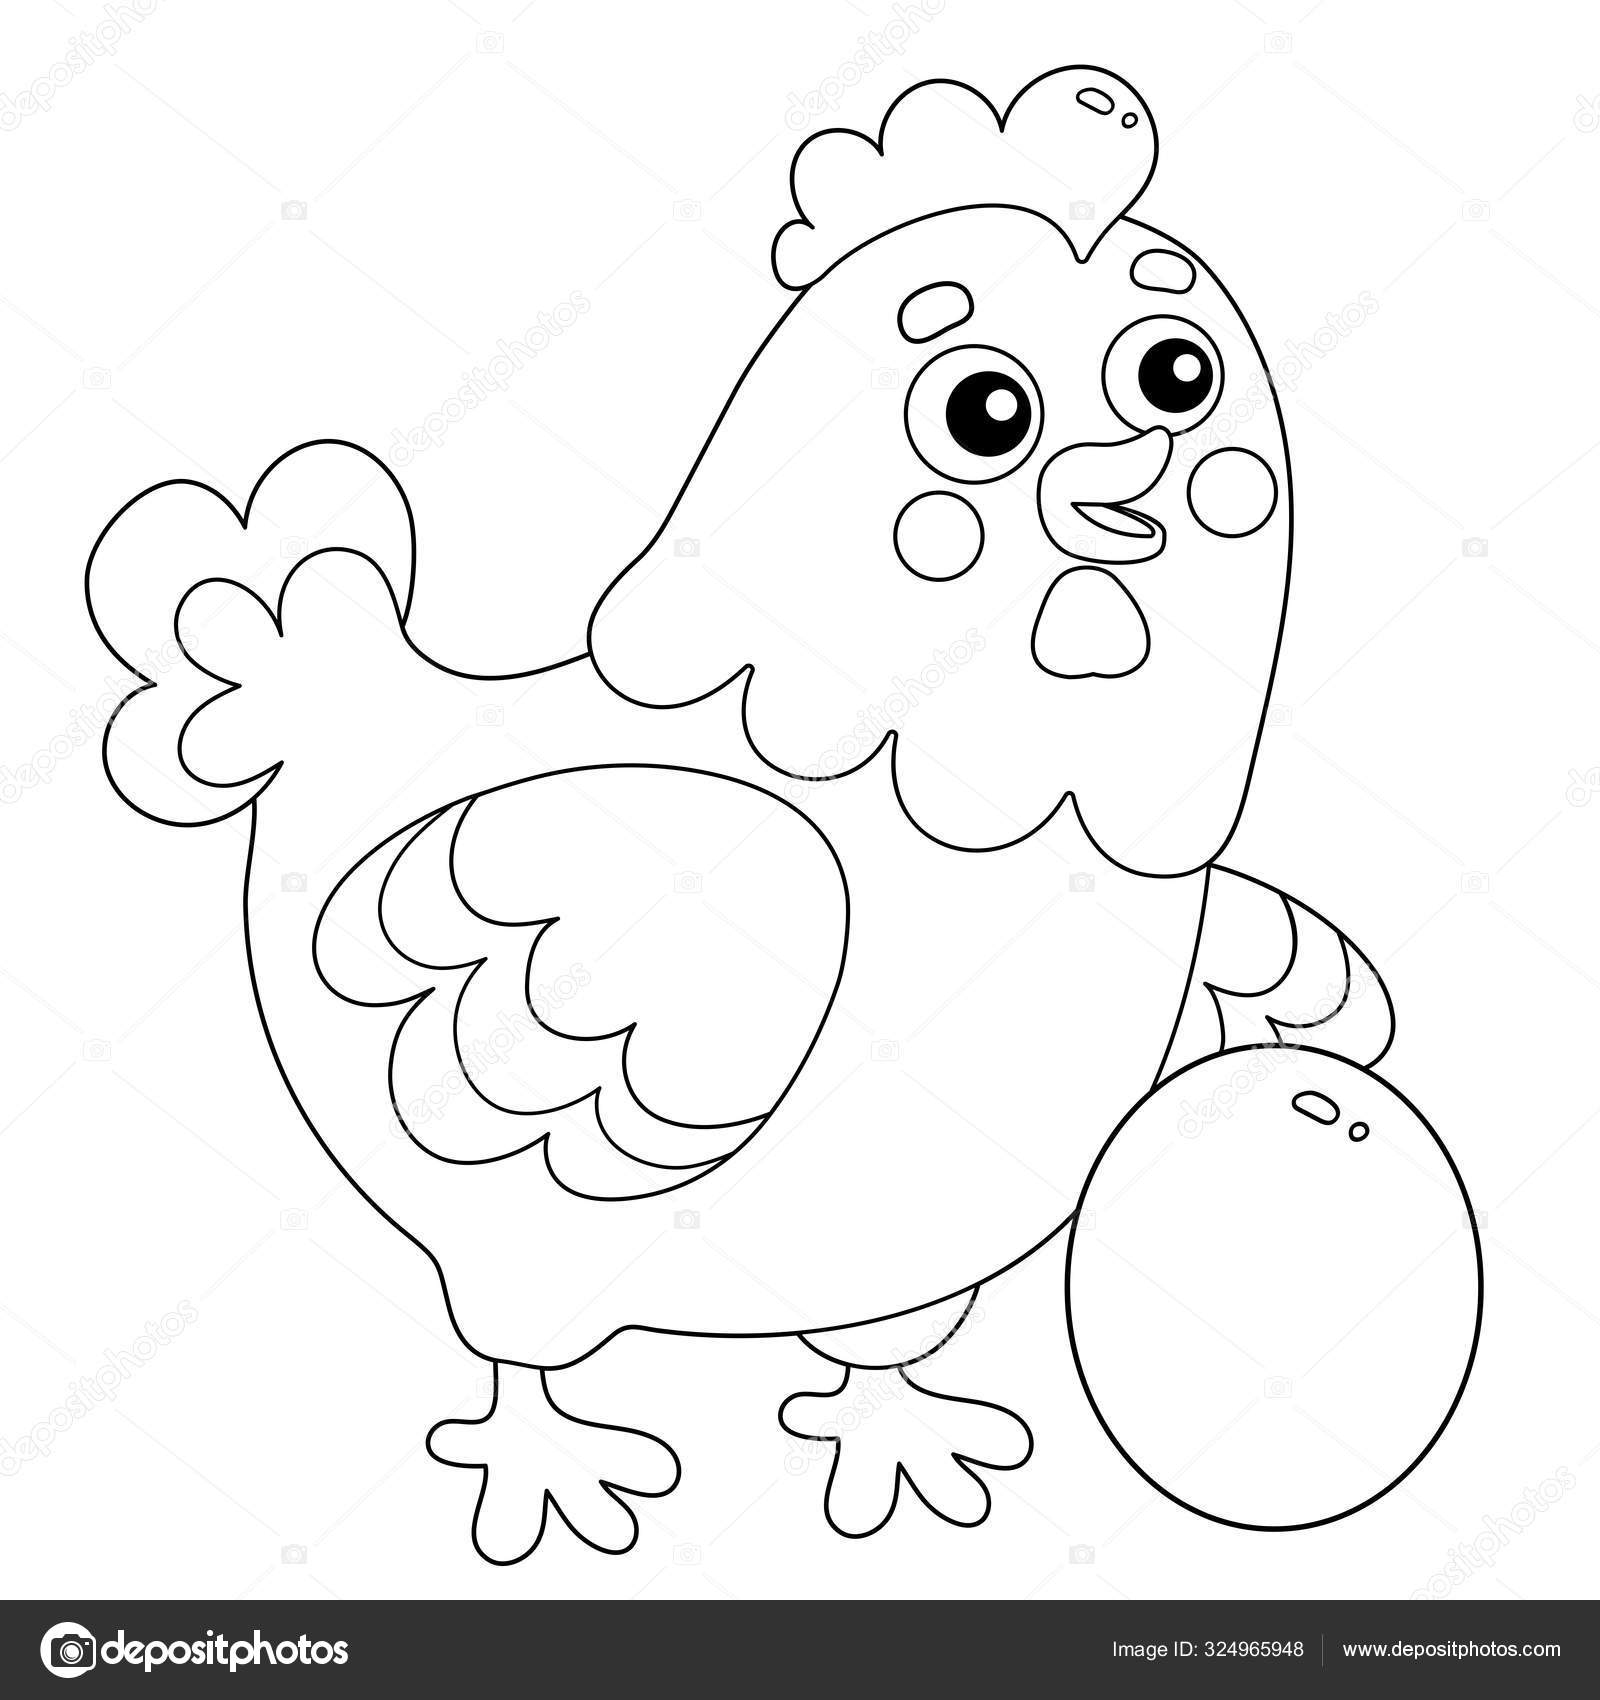 Livro De Colorir Para Crianças Galinha De Desenho Animado Em Um Xale  Ilustração do Vetor - Ilustração de plumagem, galinha: 262750552